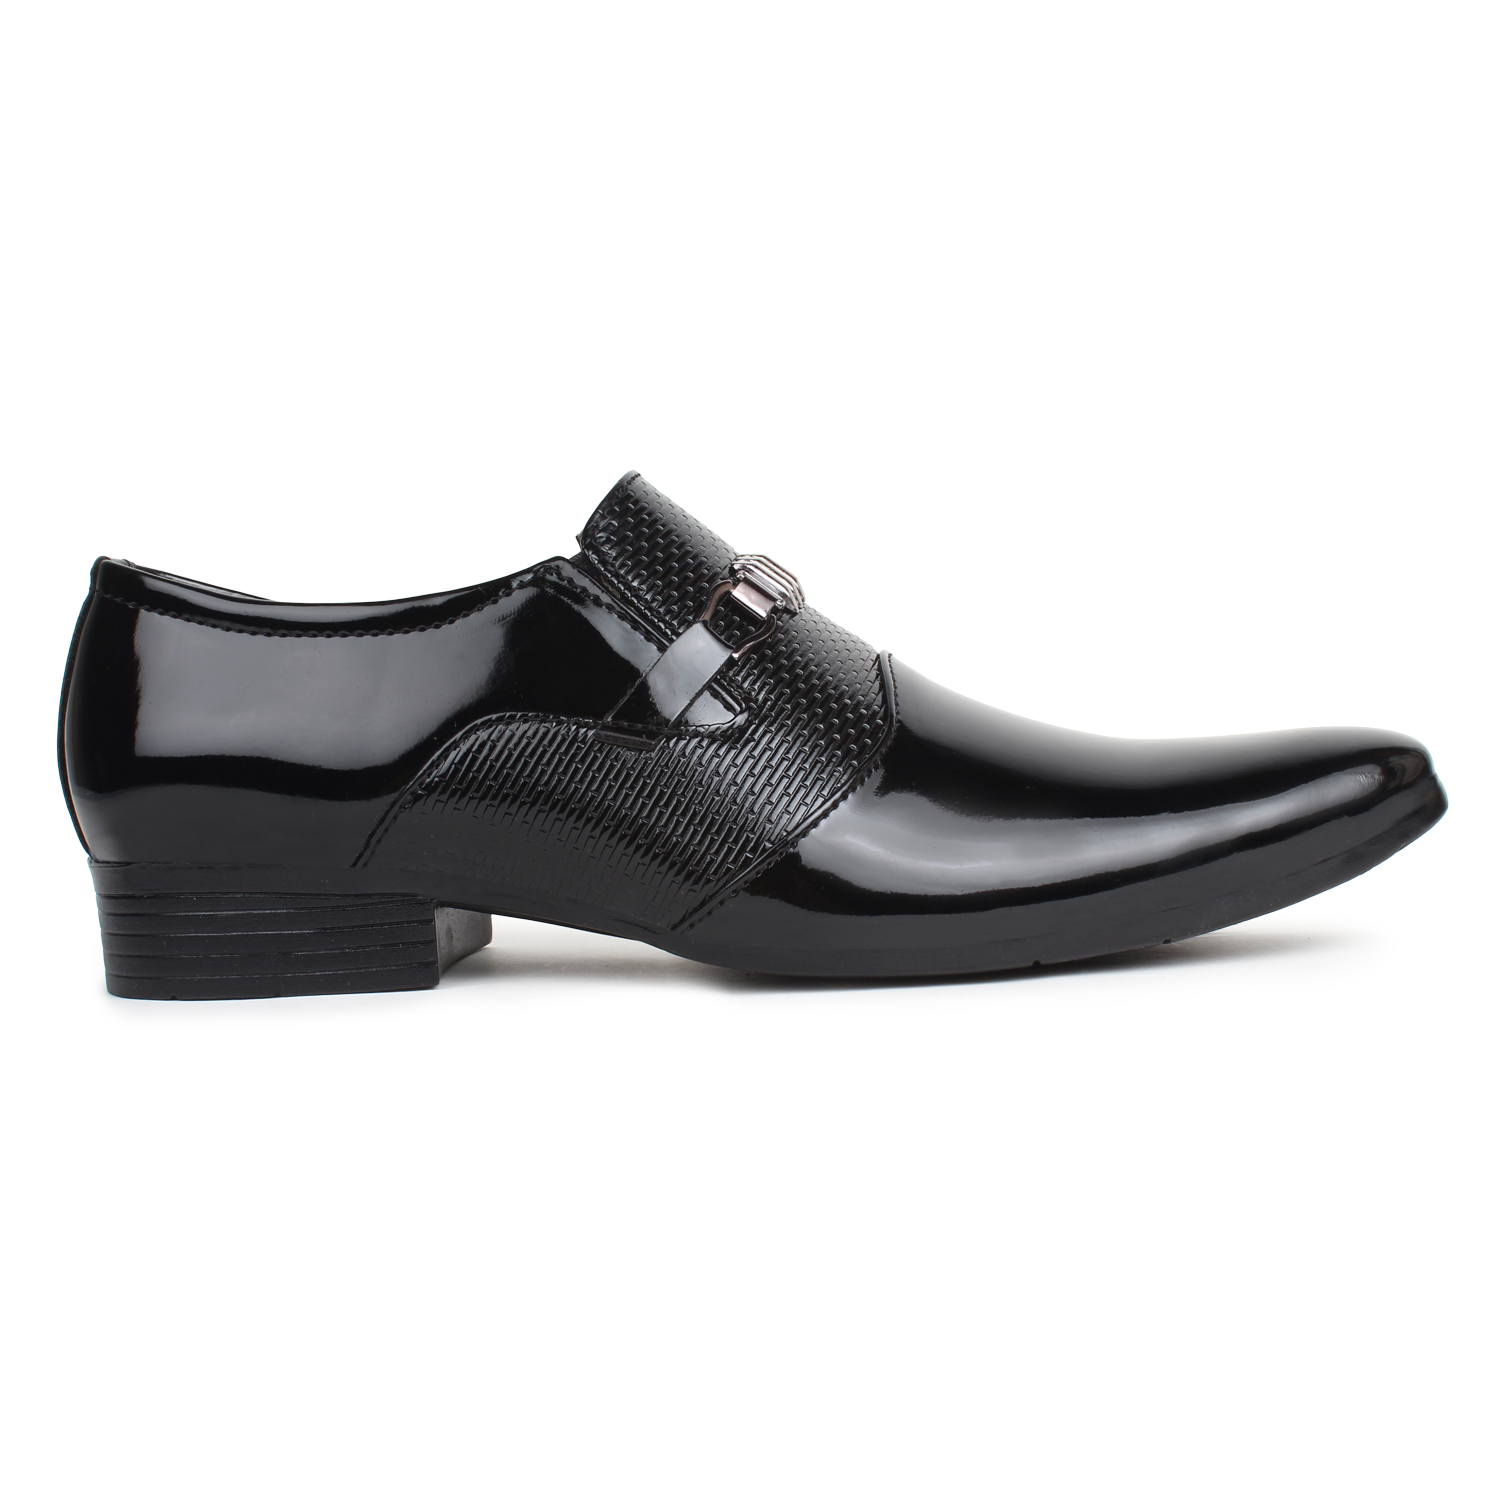 Buy Buwch Formal Black Patent Leather Moccasin Shoe For Men Online ...